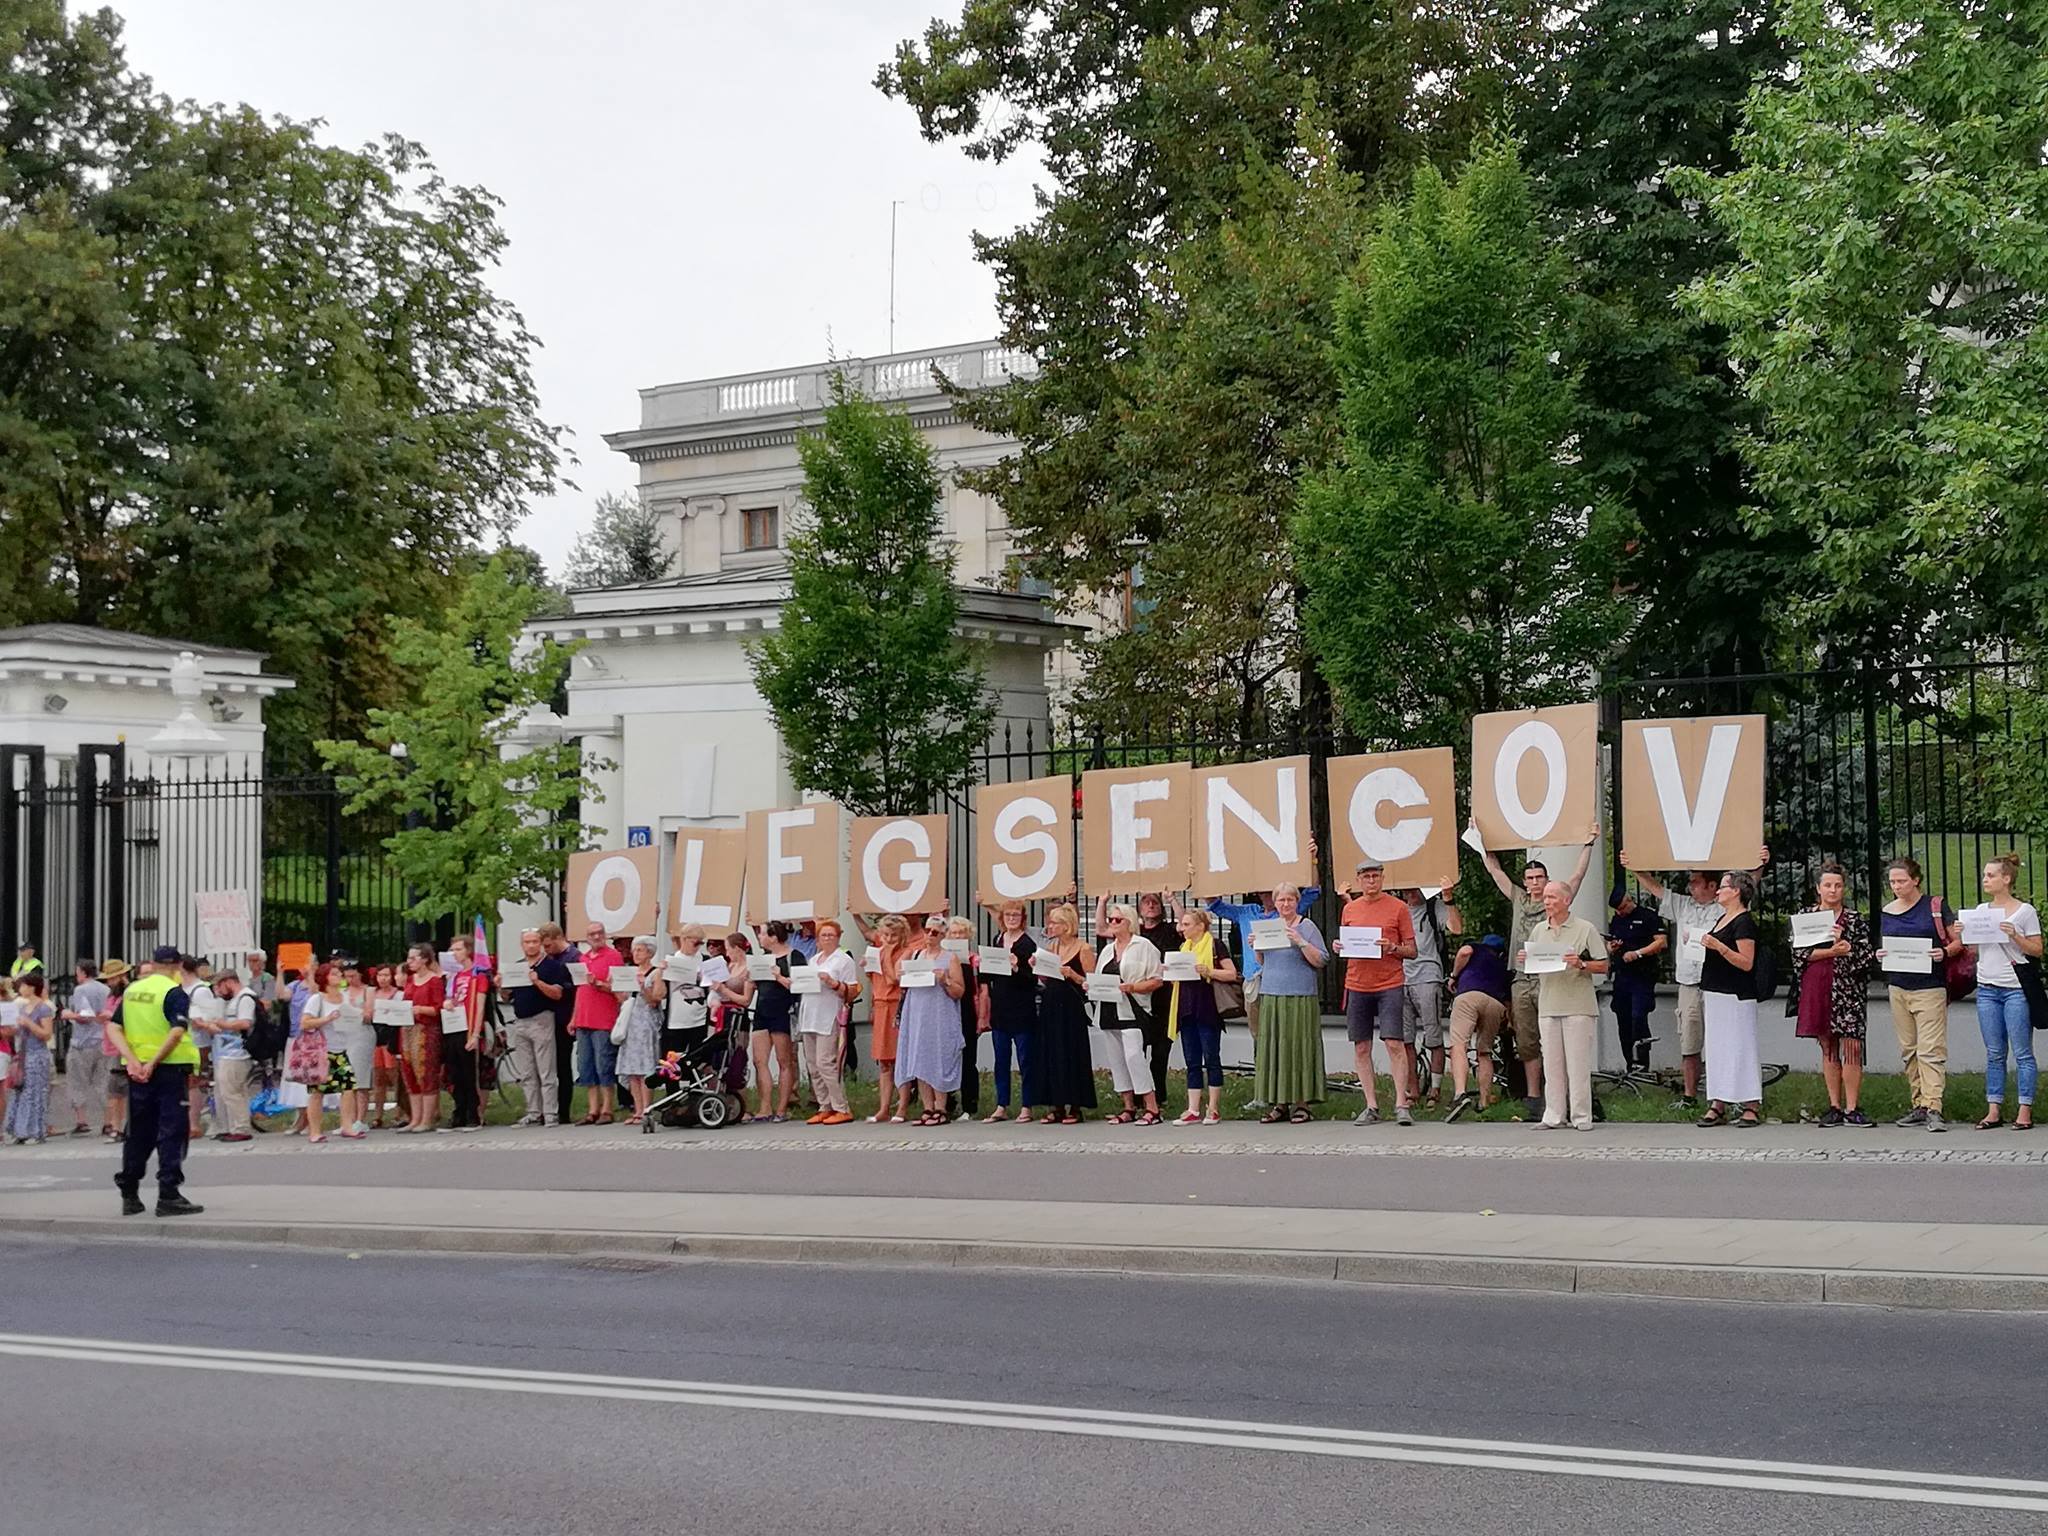 “Віддайте його живим”. У Варшаві закликають звільнити Олега Сенцова